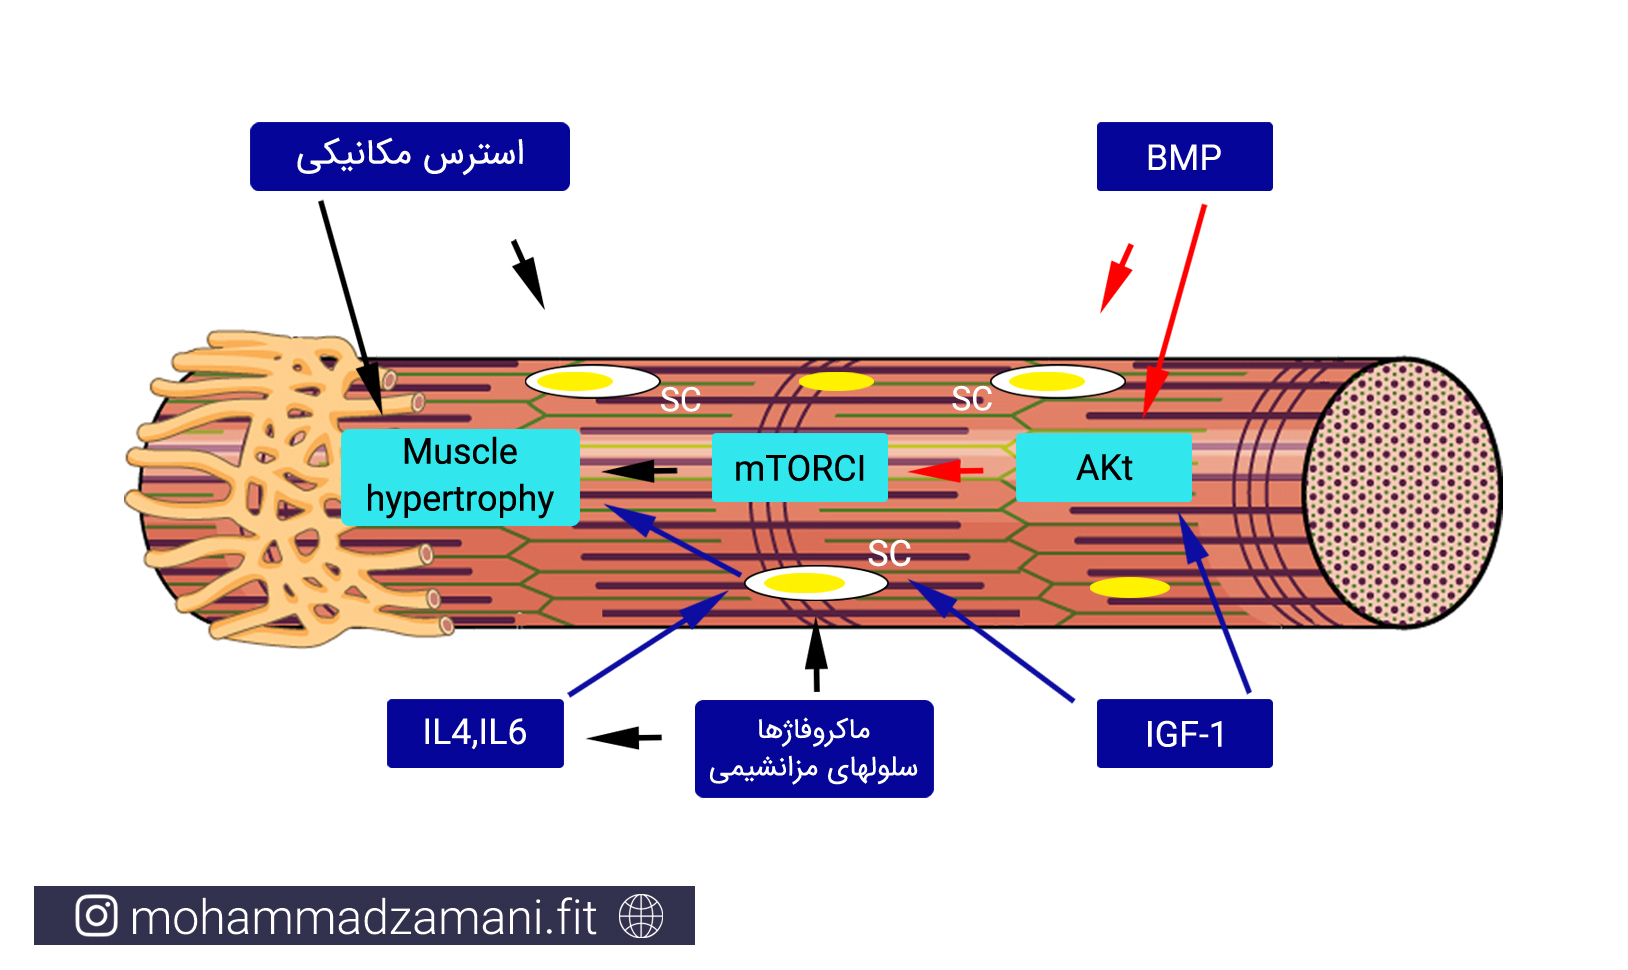 عوامل محرک سلول¬های ماهواره¬ای برای تبدیل به هسته سلول عضلانی و ایجاد هایپرتروفی عضلانی